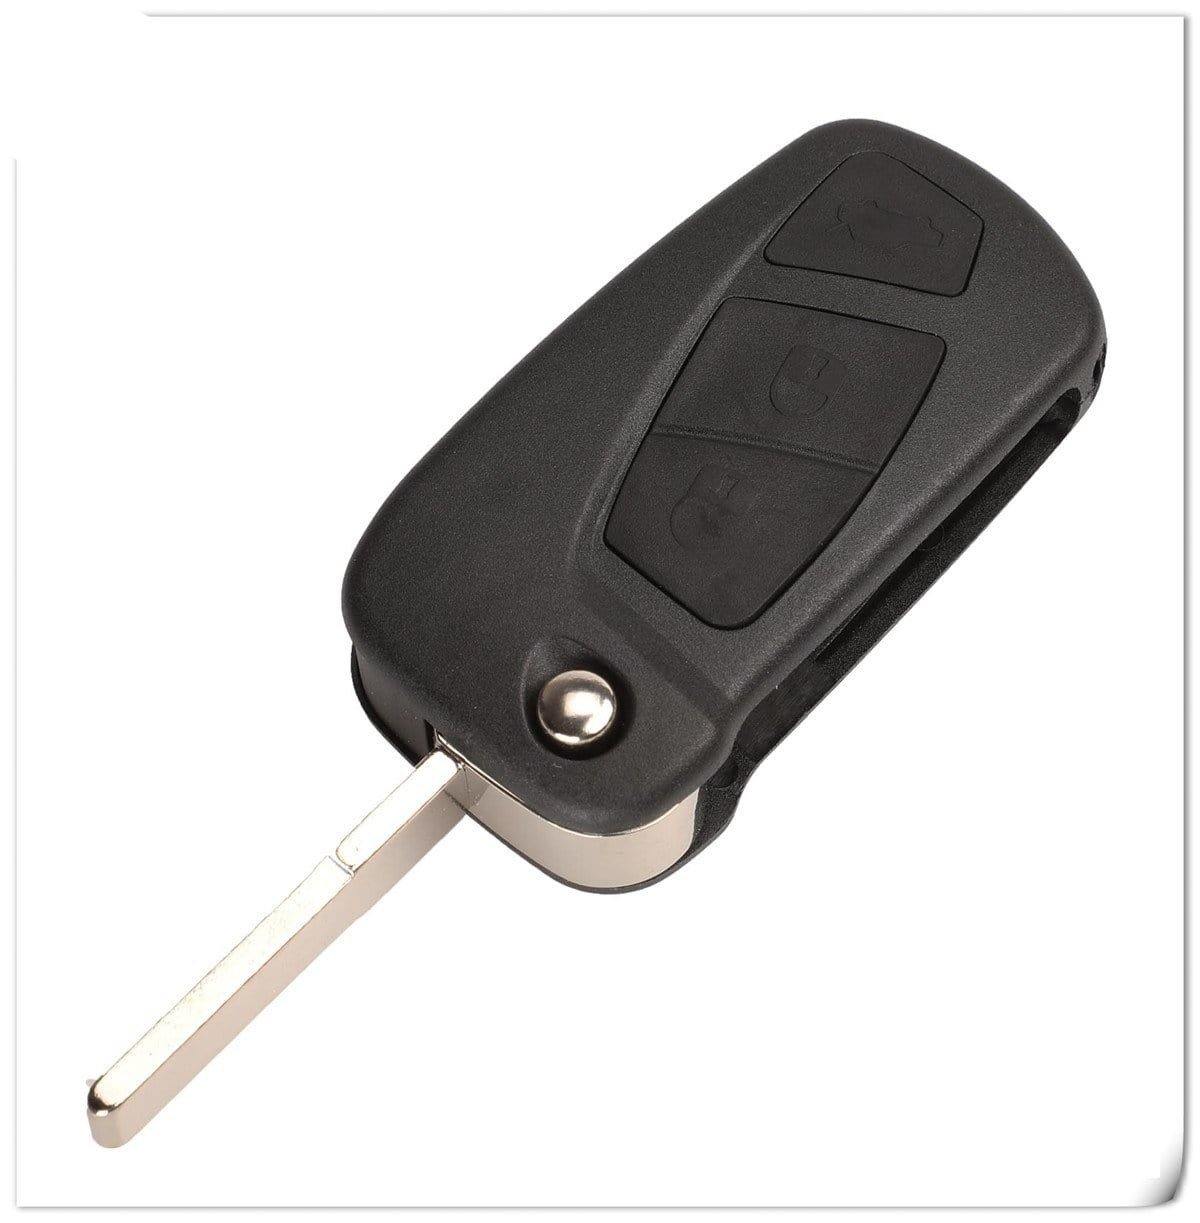 Fekete színű, 2 gombos Citroen kulcsház, bicskakulcs SIP22 kulcsszárral.